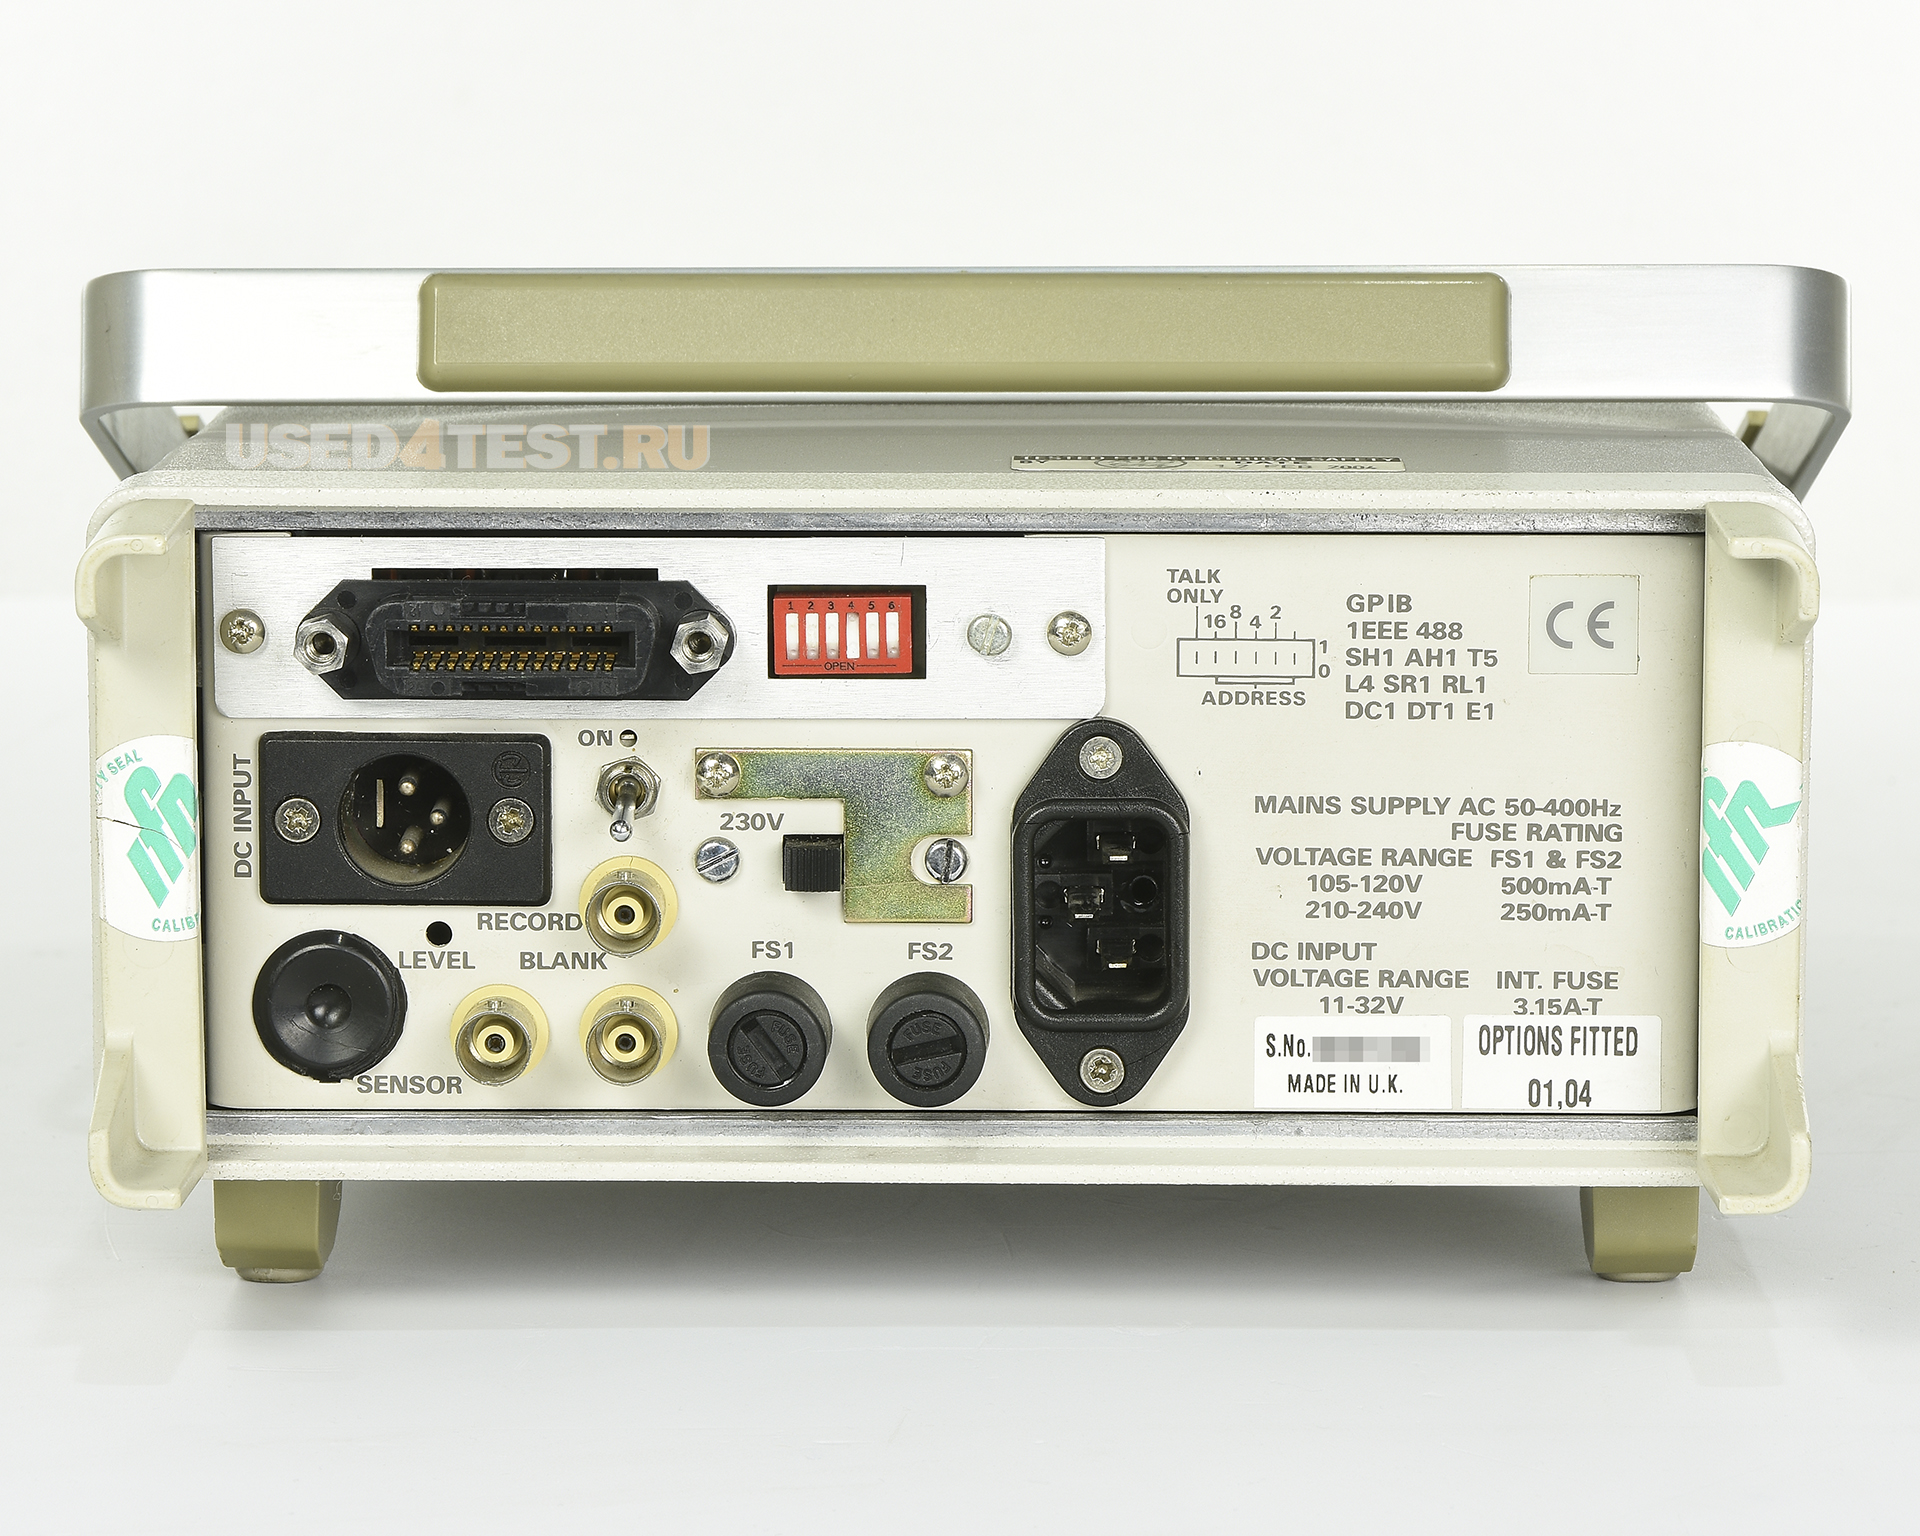 Измеритель мощности Aeroflex IFR 6960 B с диапазоном от 30 кГц до 46 ГГц
 
 
 
 

 В комплекте с опциями: 


	Option 001 - GPIB
	Option 004 - External DC operation


 
 

 Стоимость указана в Рублях DDP Москва по безналичному расчету без НДС

 